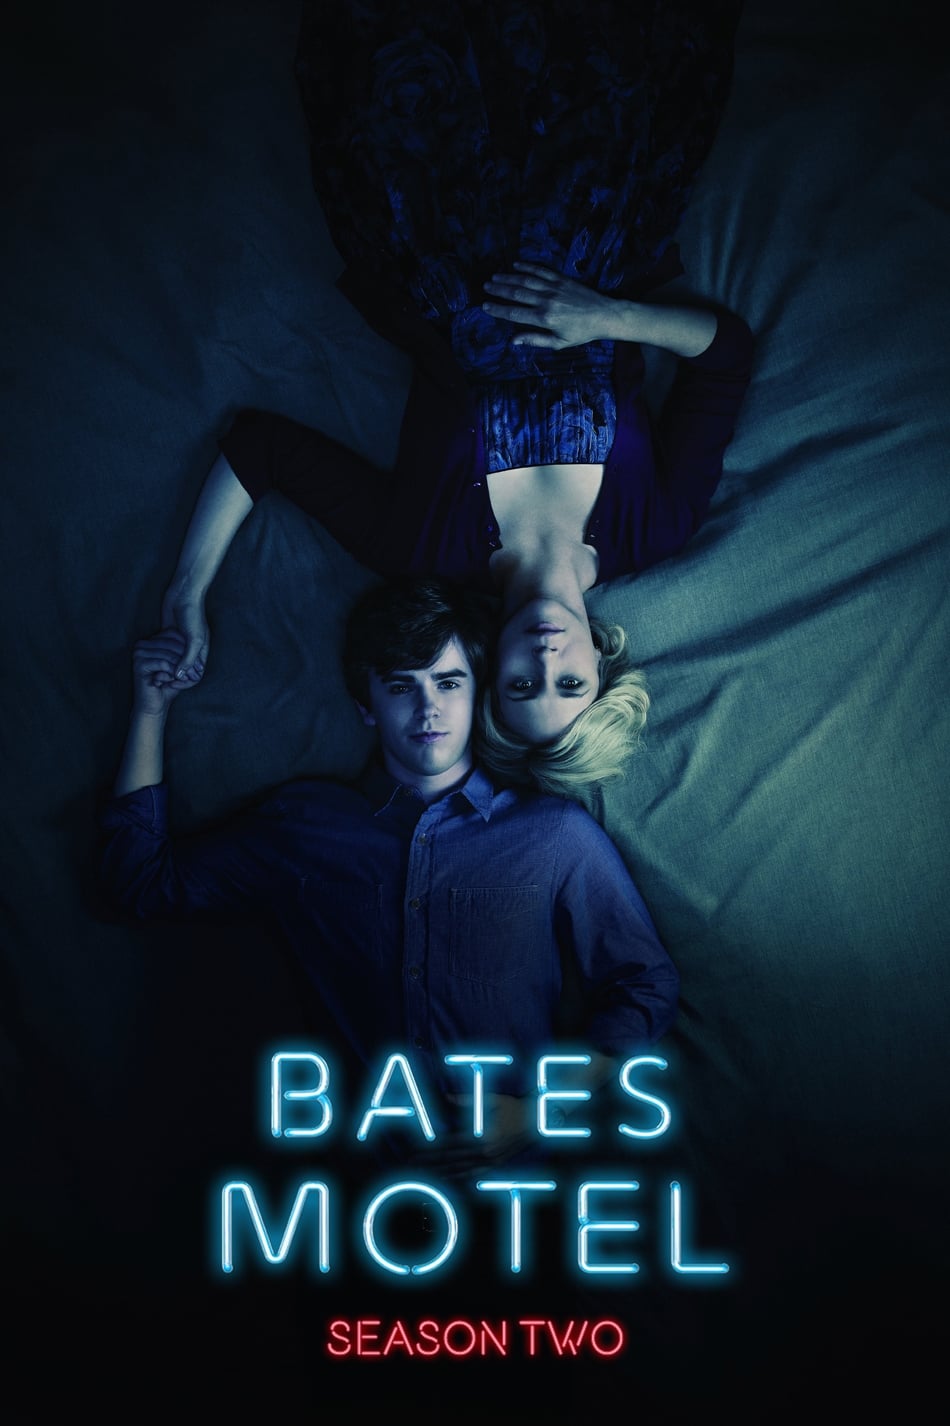 ดูหนังออนไลน์ฟรี Bates Motel (2014) Season 2 ซับไทย EP 5 เบส โมเทล ปี2 ตอนที่5 (ซับไทย)